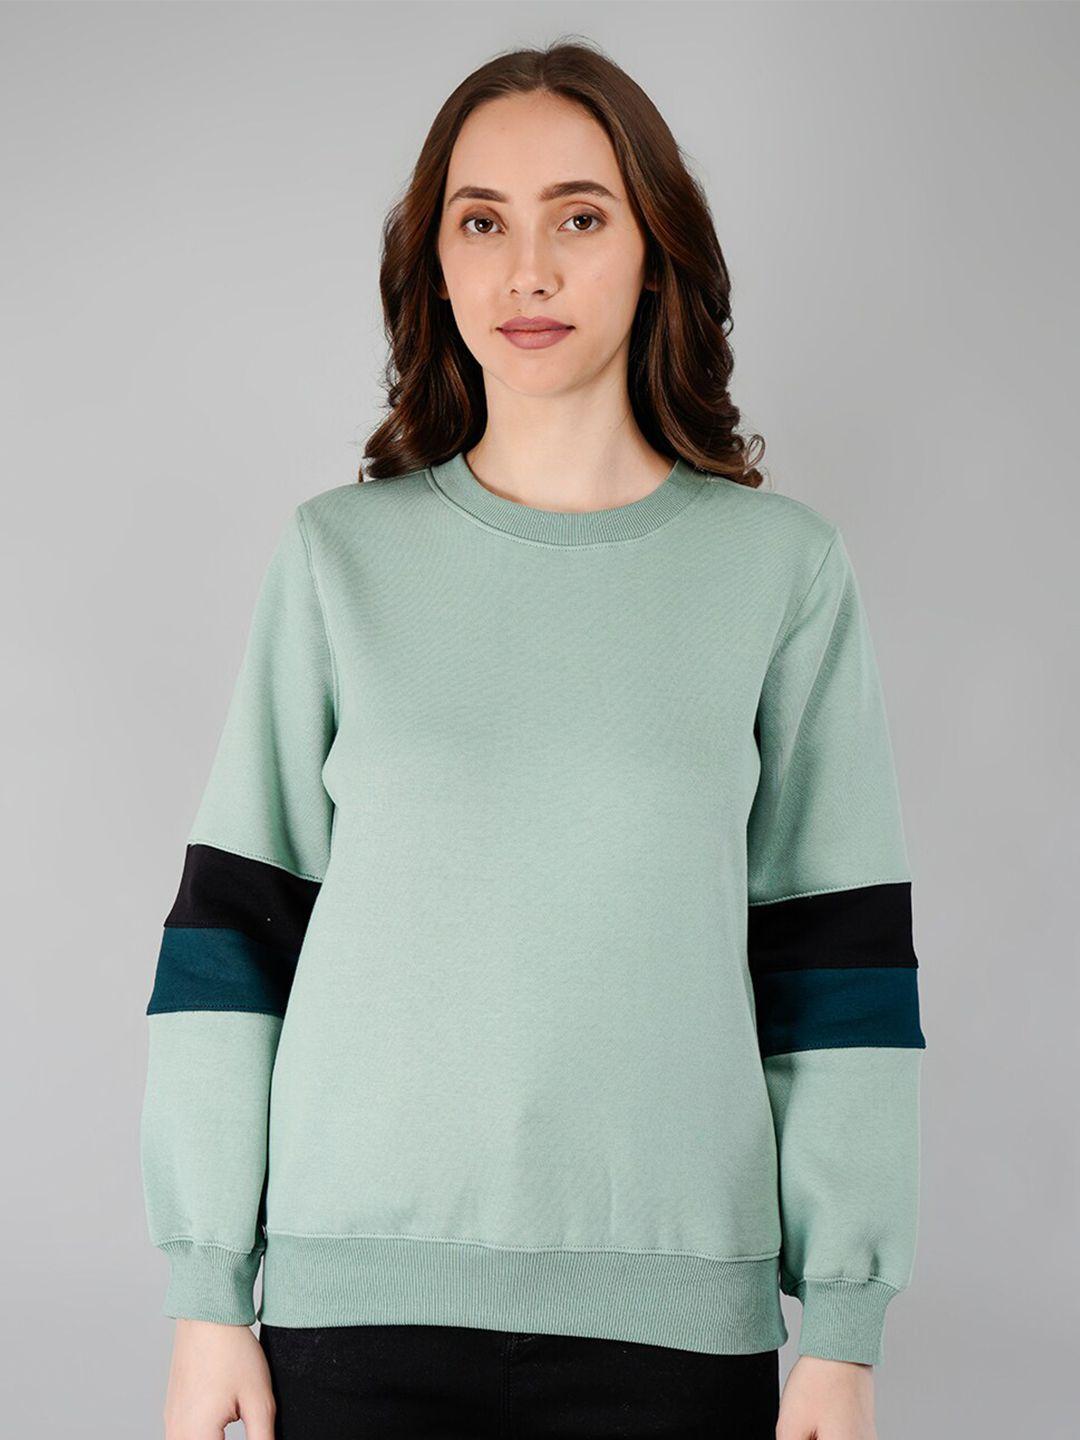 besimple-women-multicoloured-striped-sweatshirt